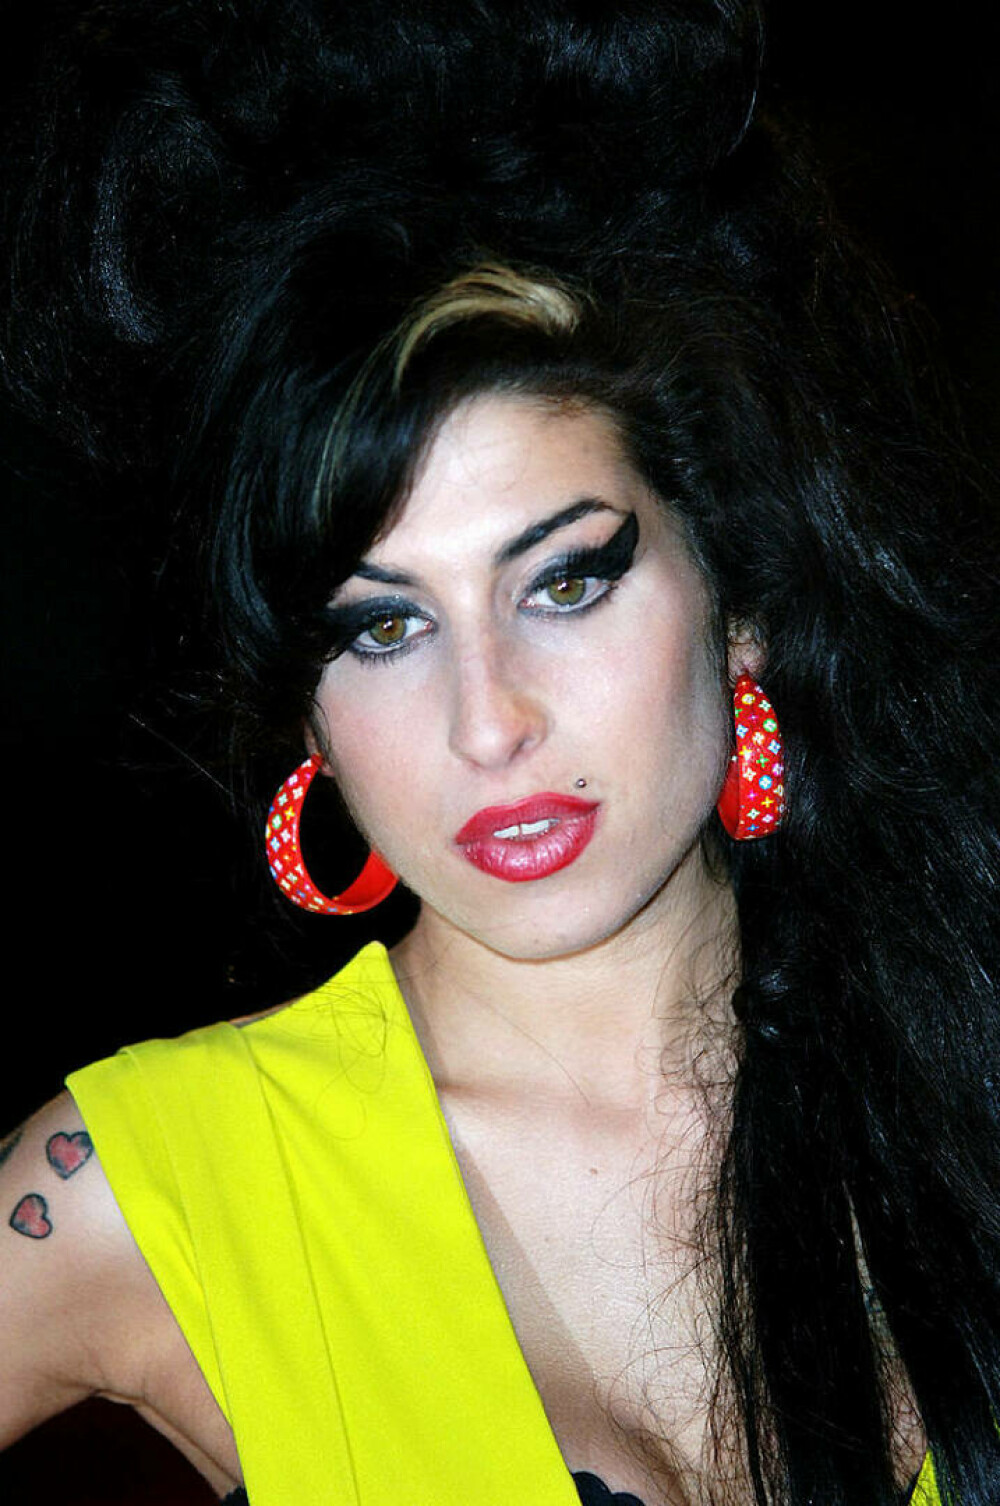 Imagini de colecție cu Amy Winehouse. Cântăreața ar fi împlinit astăzi 40 de ani | FOTO - Imaginea 1